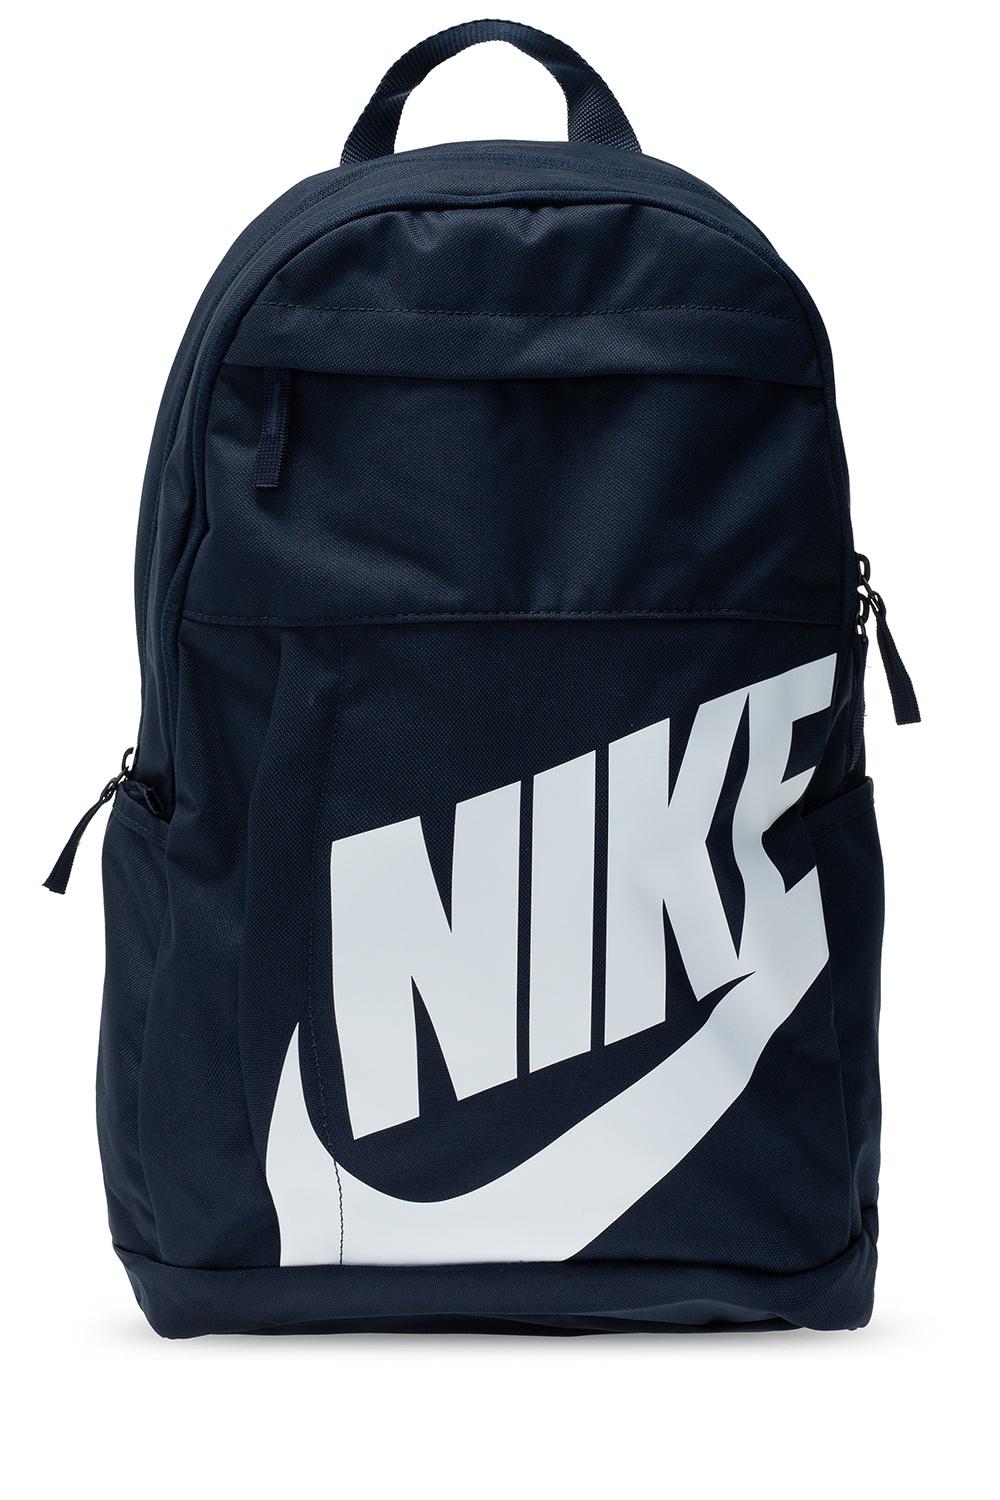 Nike Elemental Backpack 2.0 in Navy 